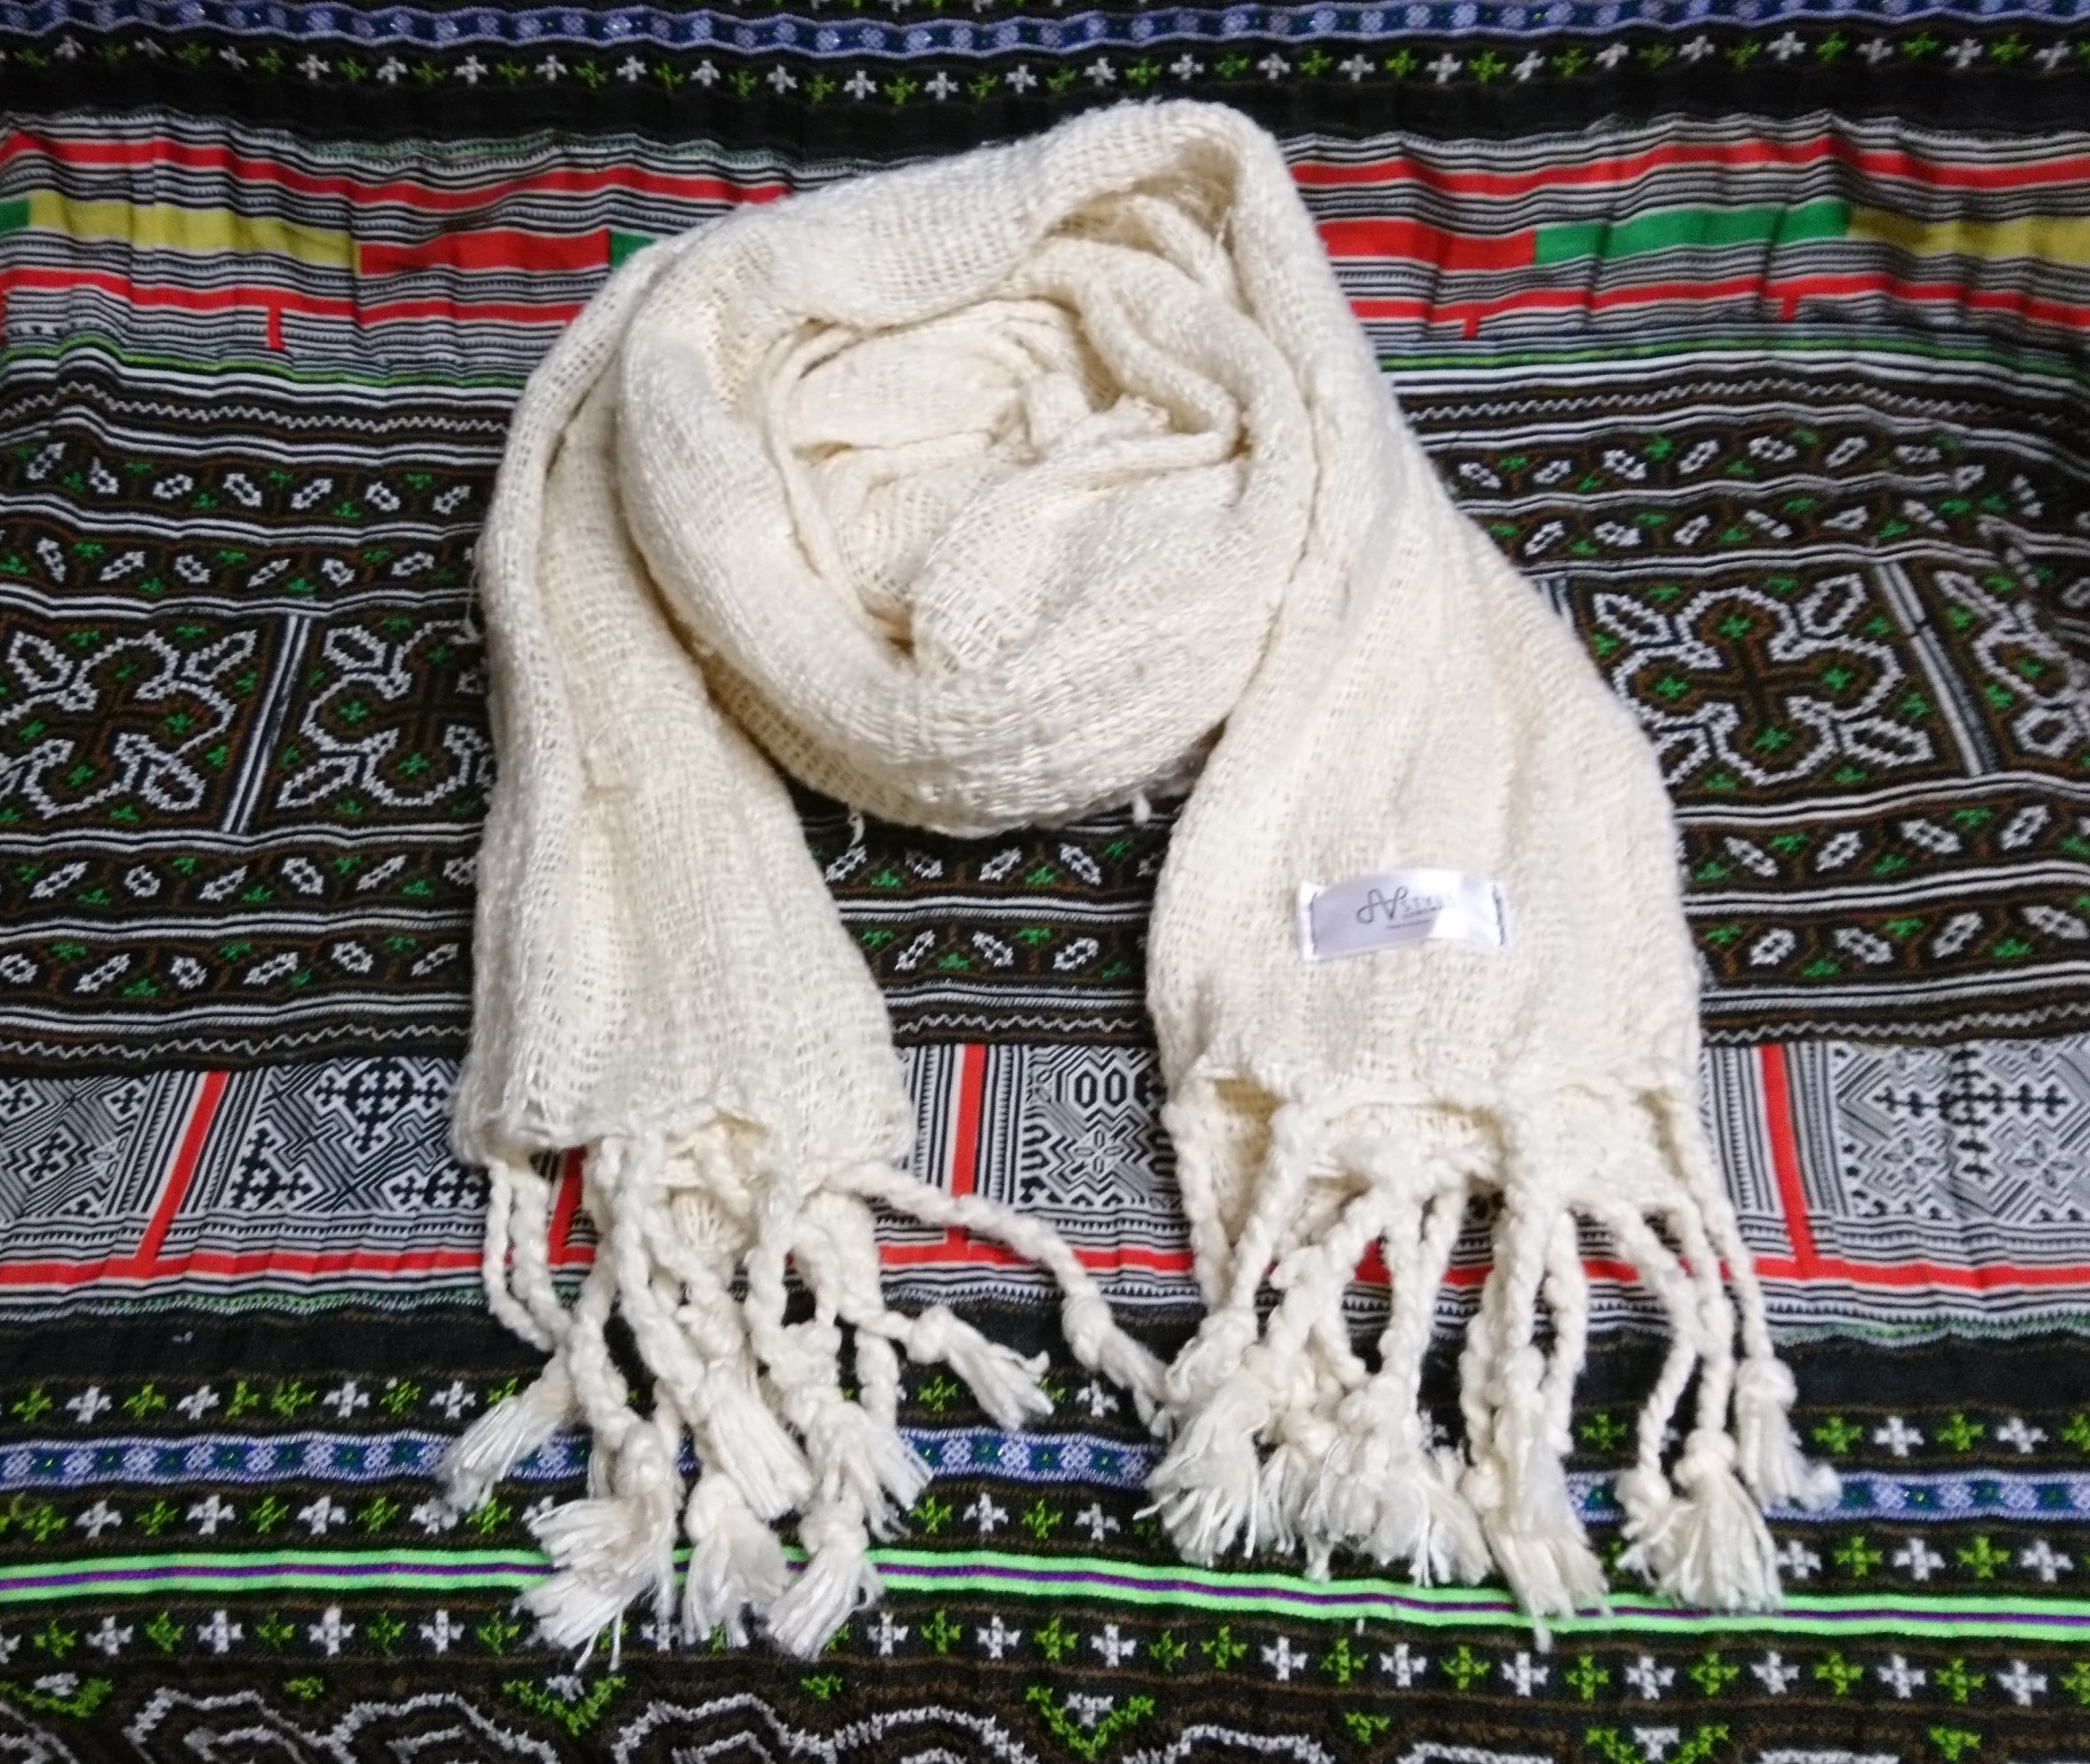 ニャサ村] 極太シルク手紡ぎ糸の手織りストール (無染色) エシカルブランド「JV STYLE」（ジェイブイスタイル）